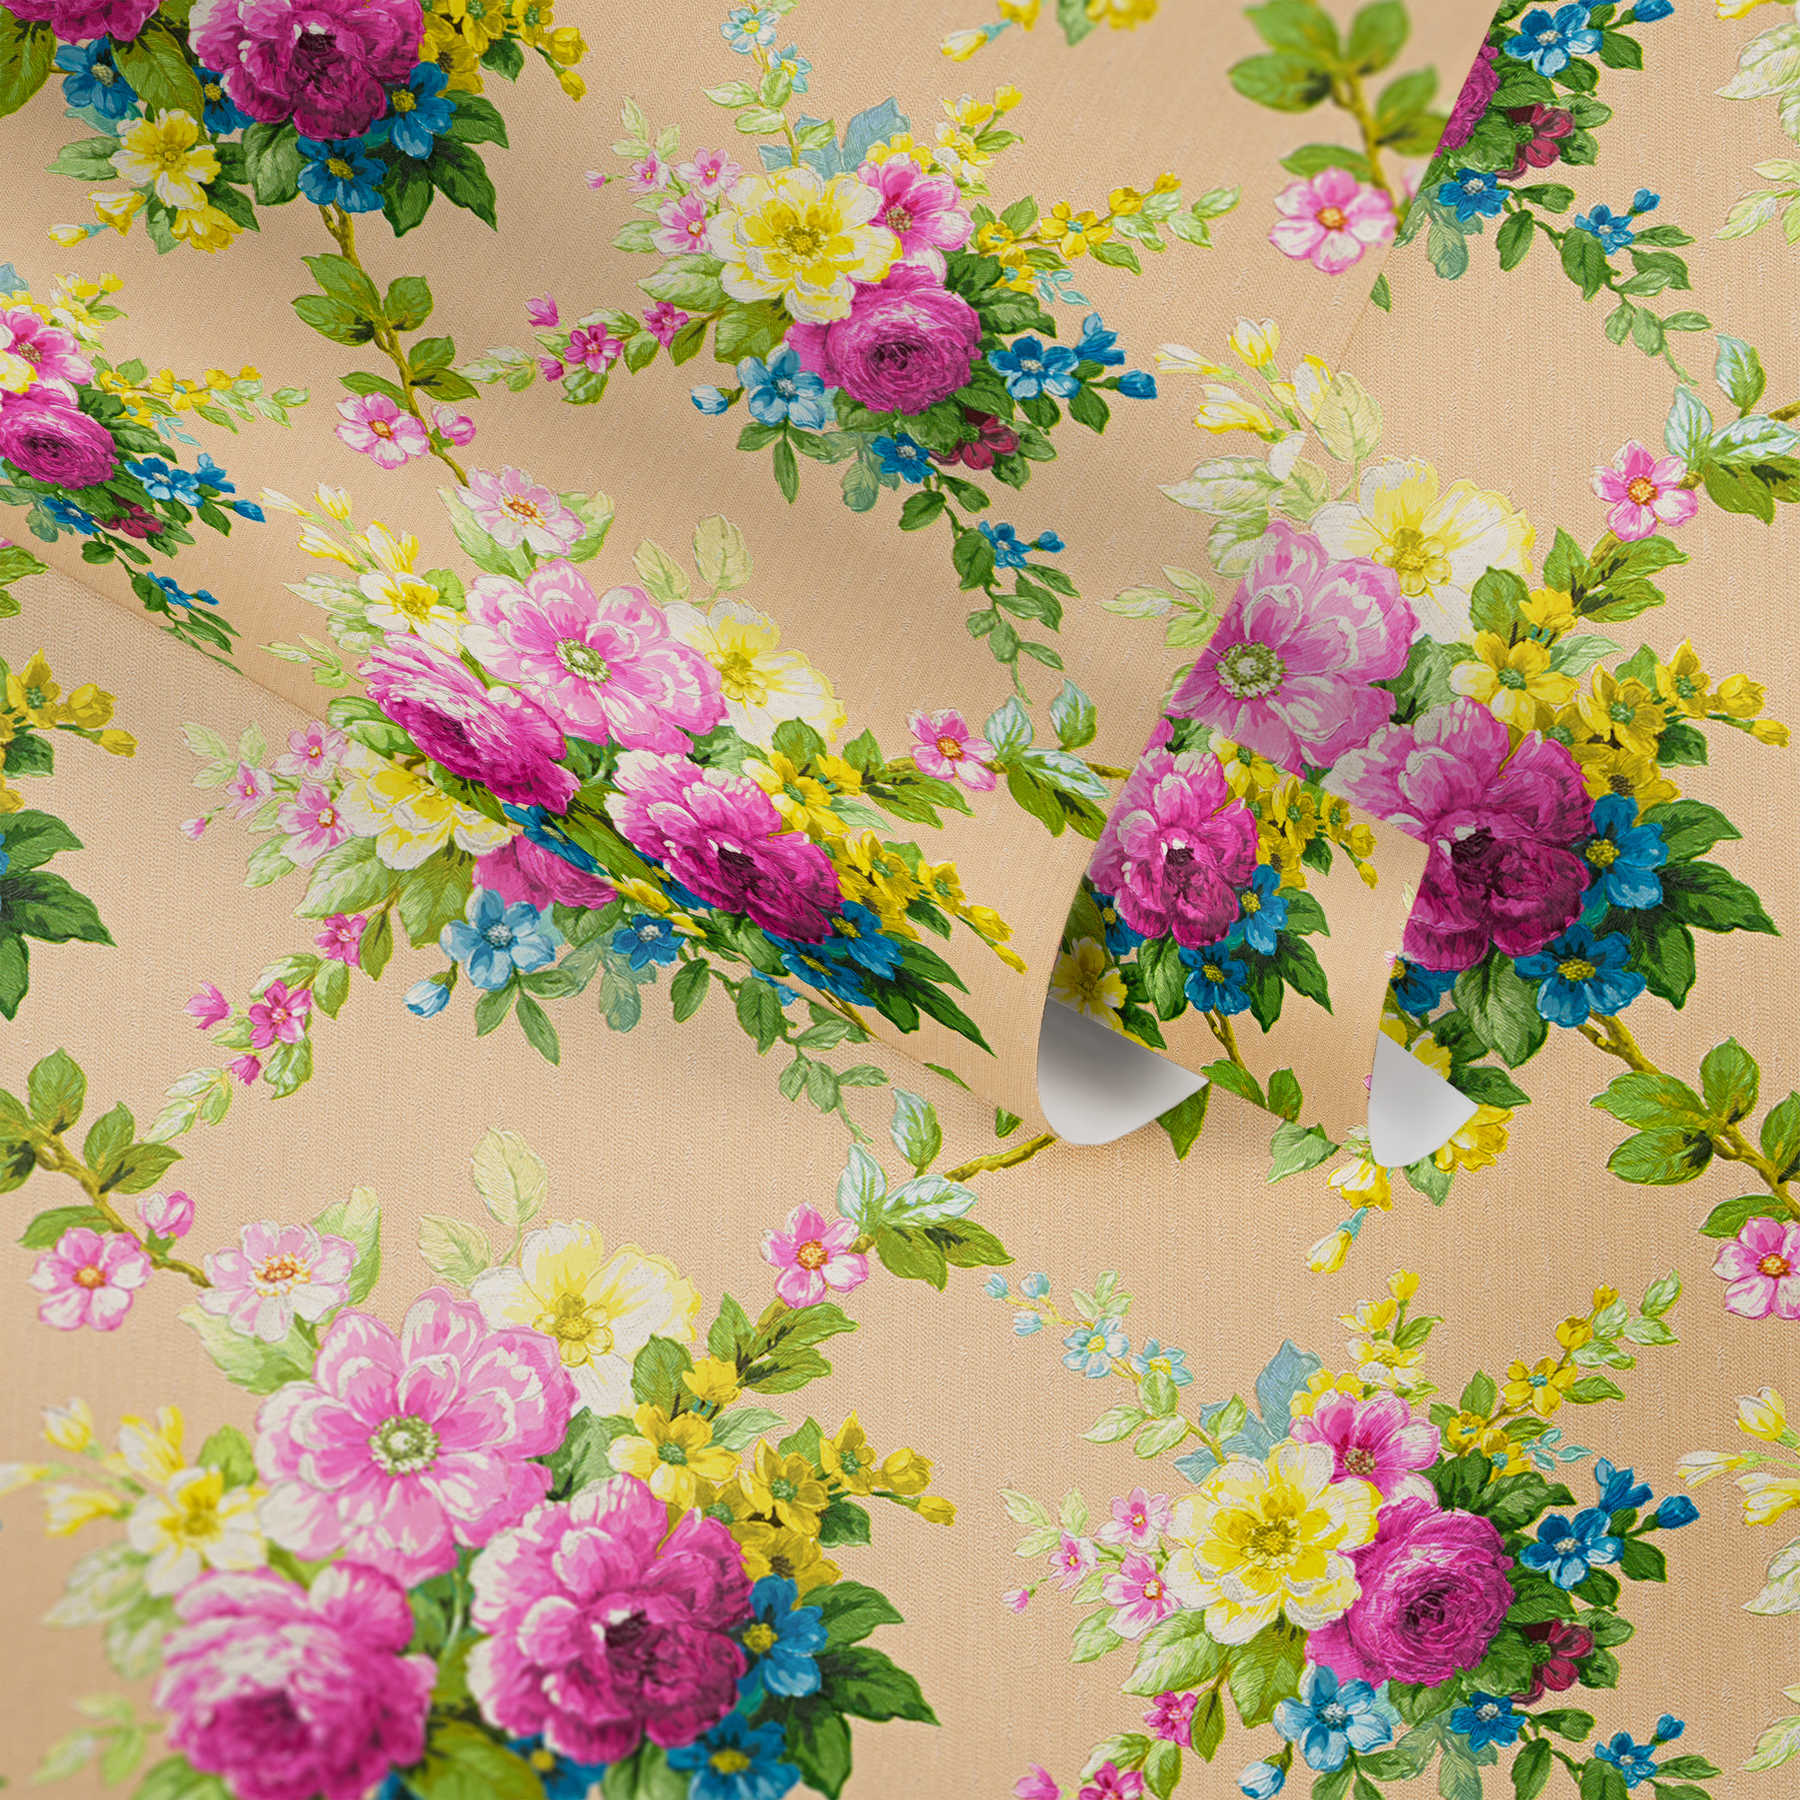             Behang Floral Decor bloemornament met metaaleffect - veelkleurig
        